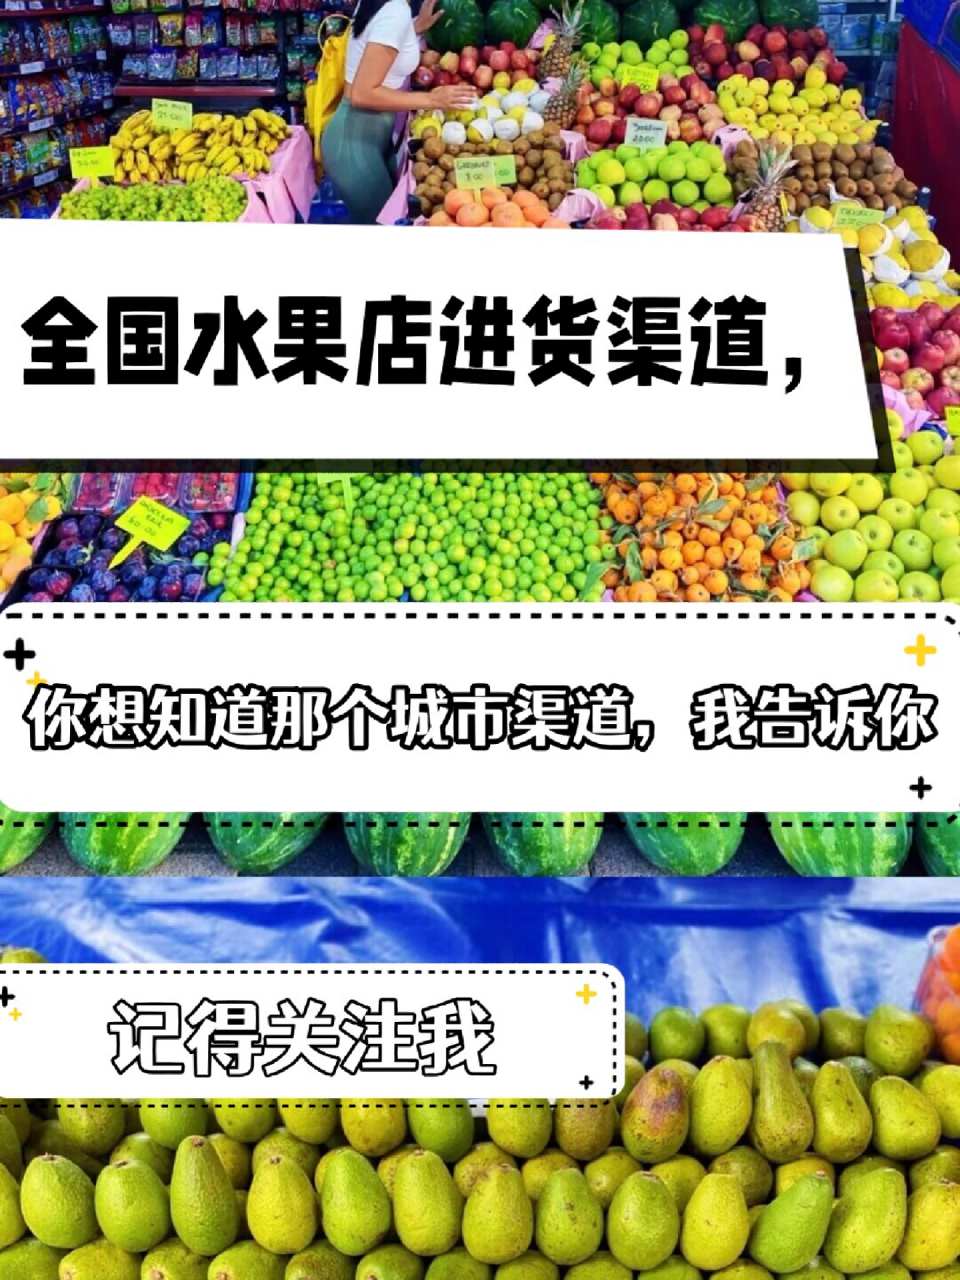 全国水果店进货渠道 国内出名的进口水果批发市场,广州江南,上海 辉展